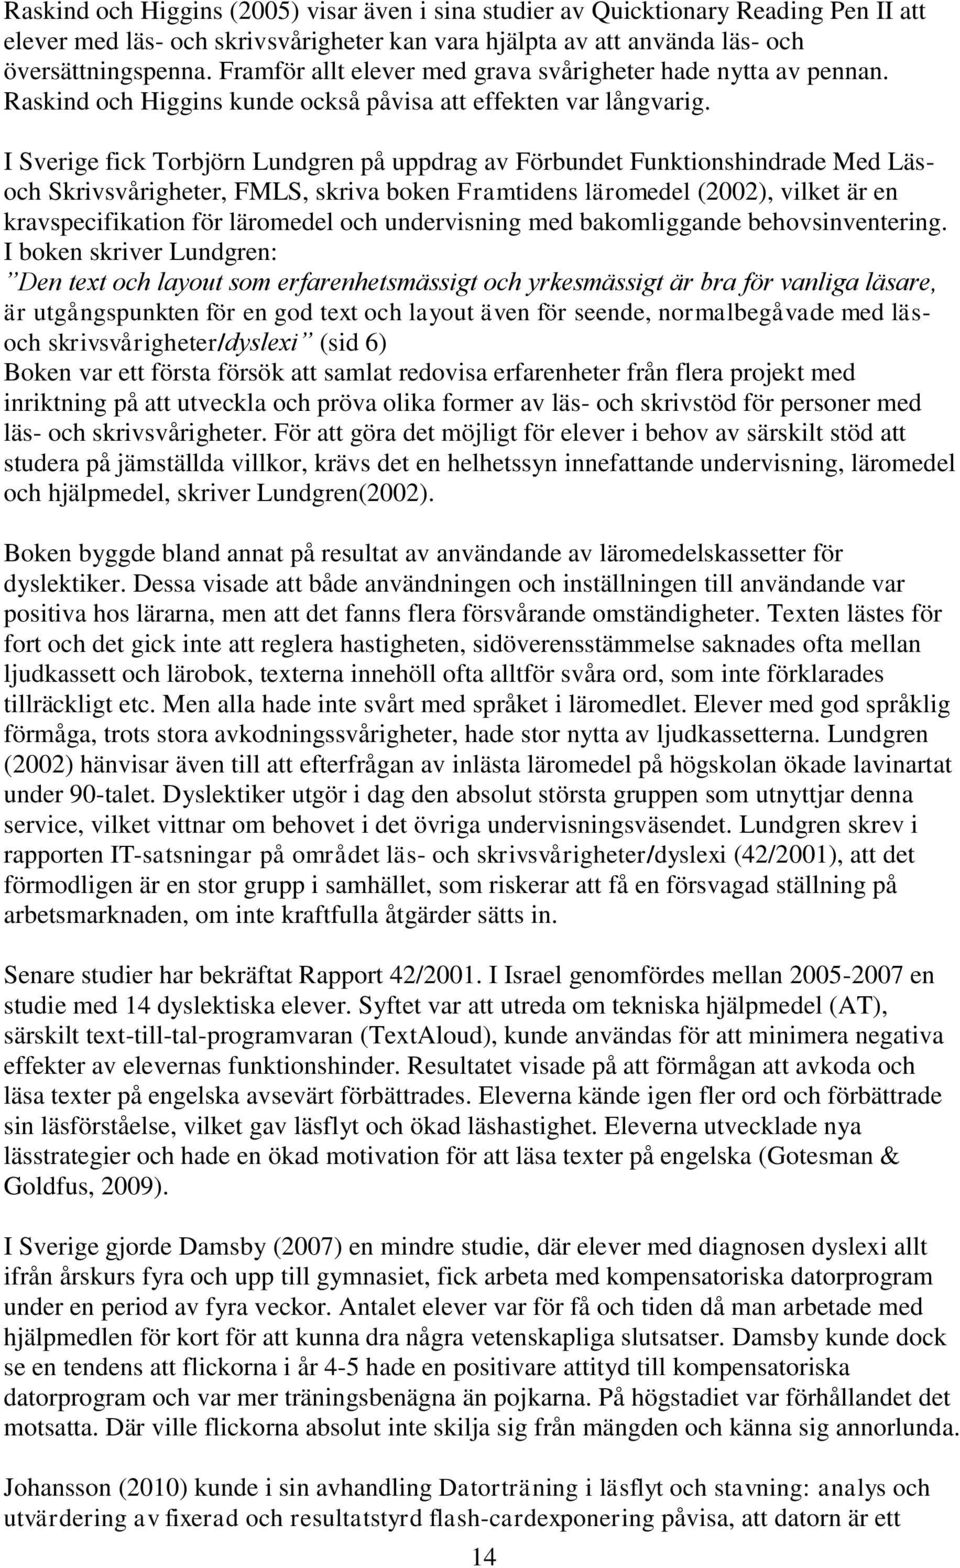 I Sverige fick Torbjörn Lundgren på uppdrag av Förbundet Funktionshindrade Med Läsoch Skrivsvårigheter, FMLS, skriva boken Framtidens läromedel (2002), vilket är en kravspecifikation för läromedel